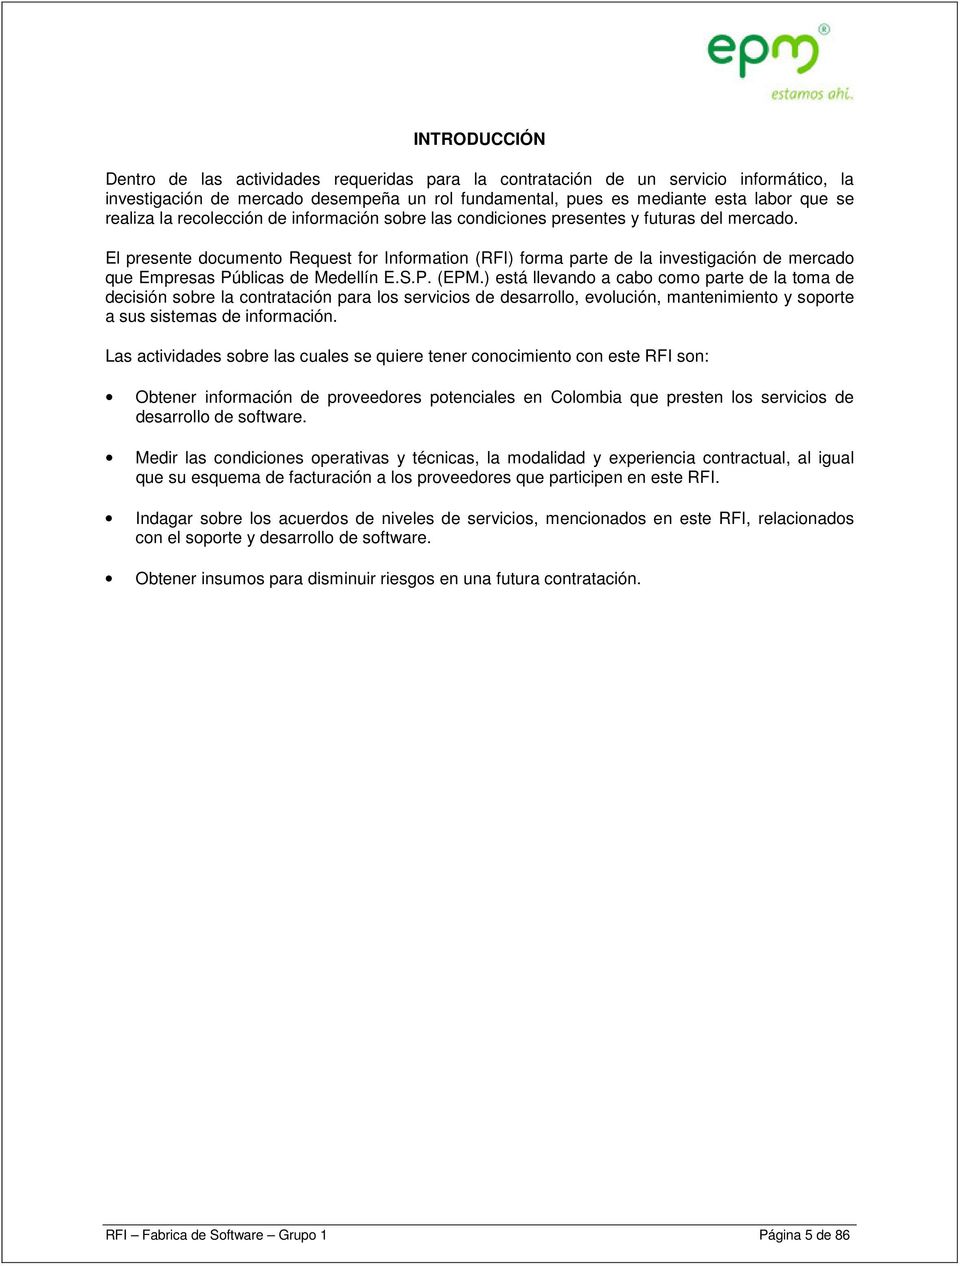 El presente documento Request for Information (RFI) forma parte de la investigación de mercado que Empresas Públicas de Medellín E.S.P. (EPM.